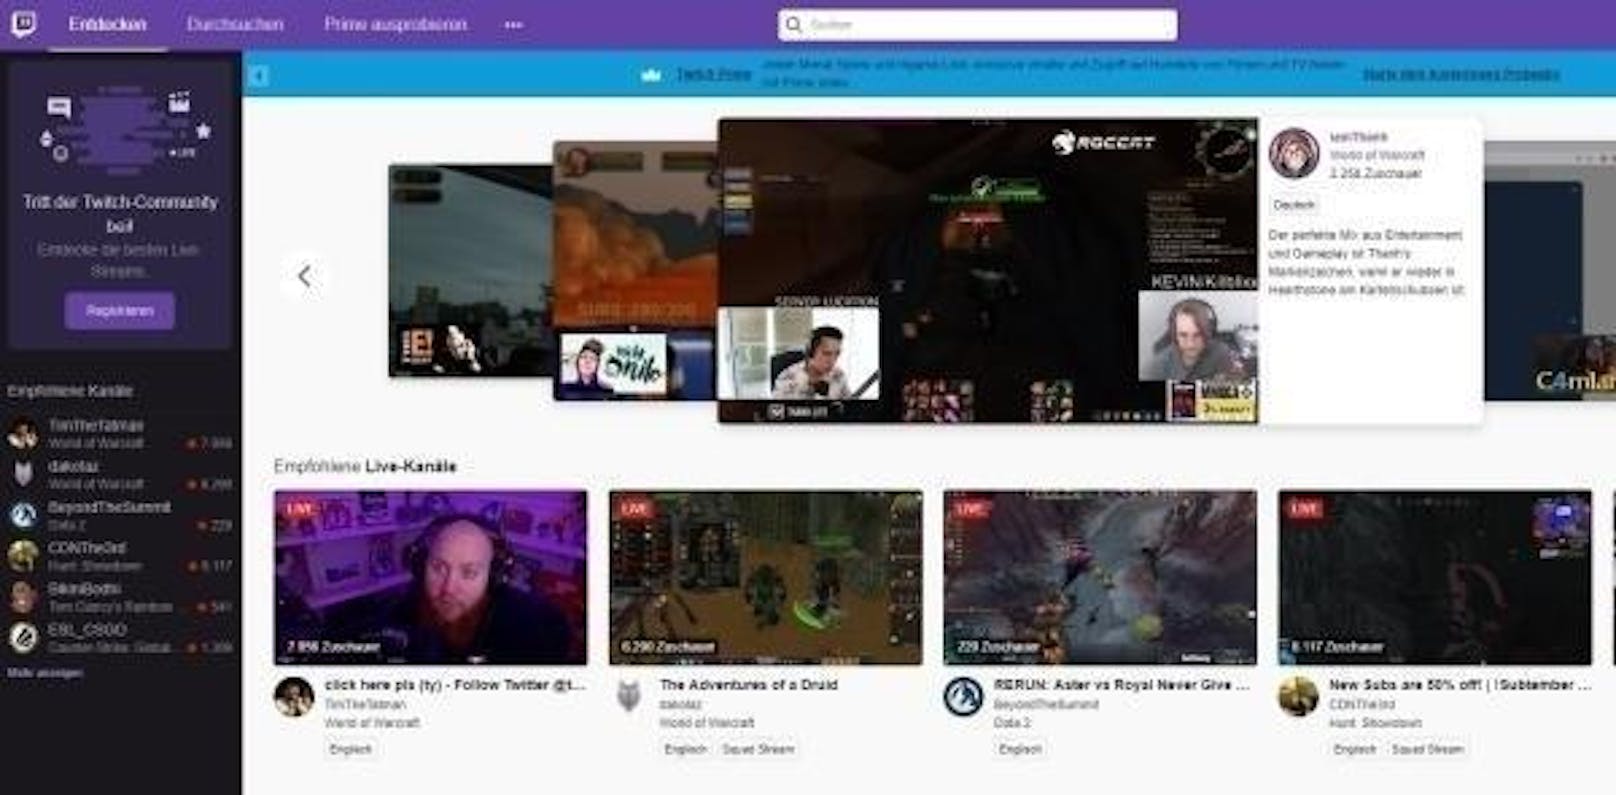 Noch lukrativer als die Turniere ist die Streaming-Branche. Auf der Plattform Twitch schauen täglich 15 Millionen Nutzer Inhalte an - und das nicht nur von Profi-Gamern.